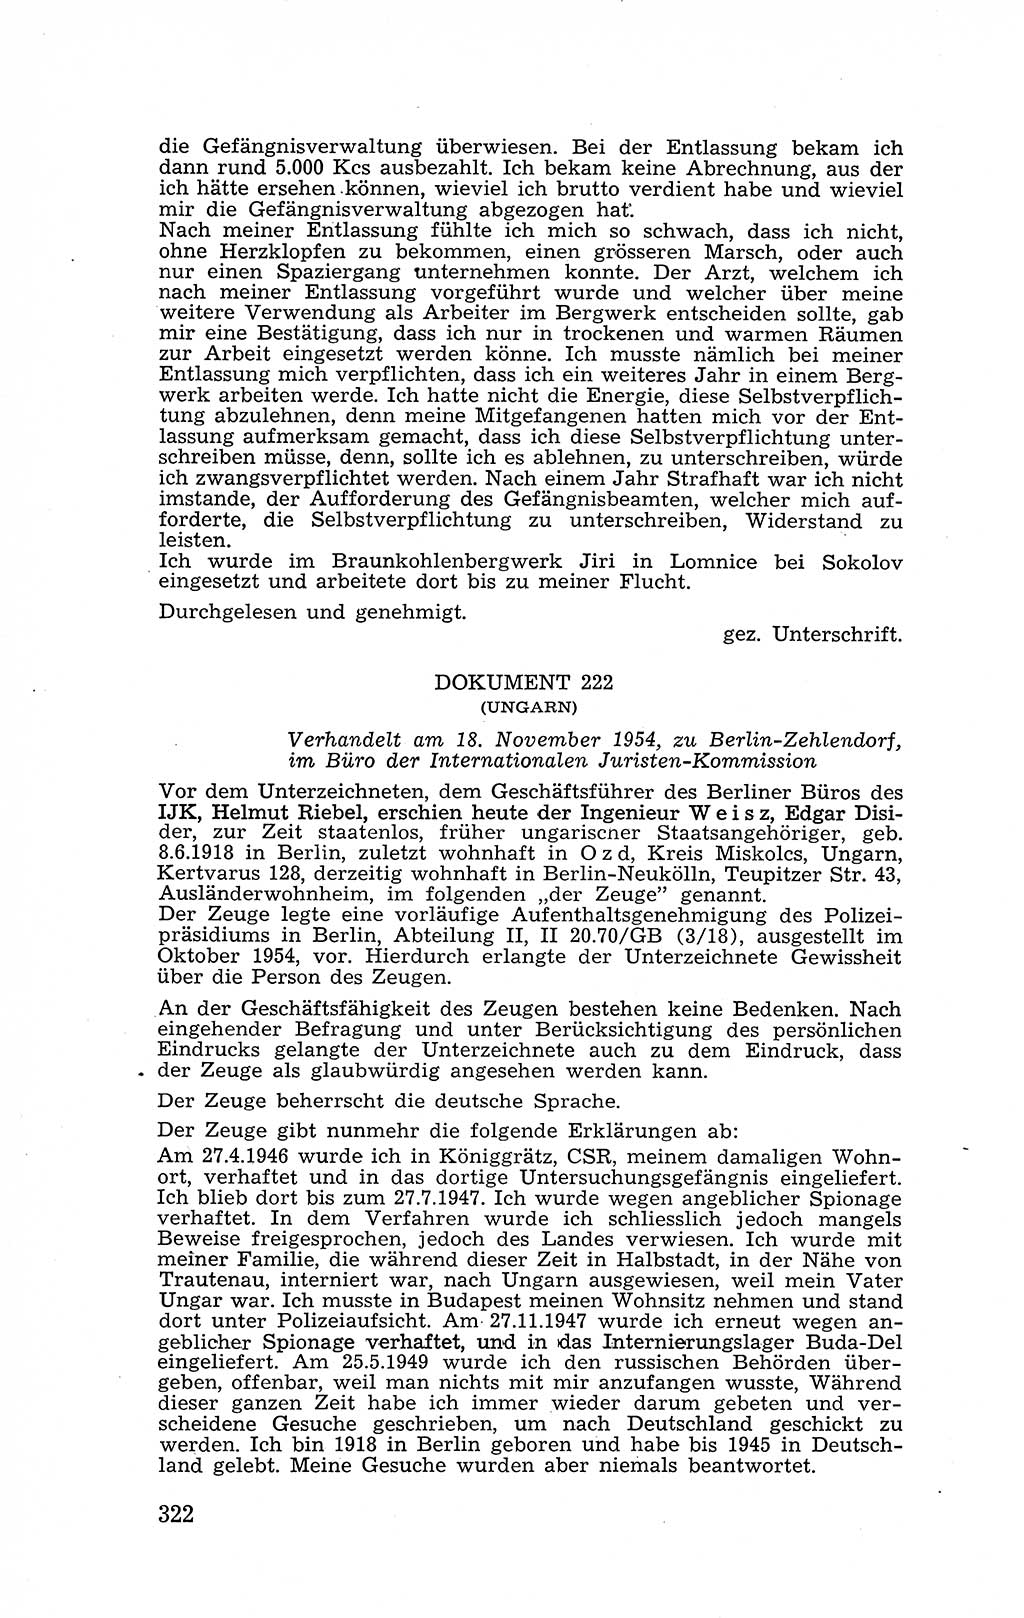 Recht in Fesseln, Dokumente, Internationale Juristen-Kommission [Bundesrepublik Deutschland (BRD)] 1955, Seite 322 (R. Dok. IJK BRD 1955, S. 322)